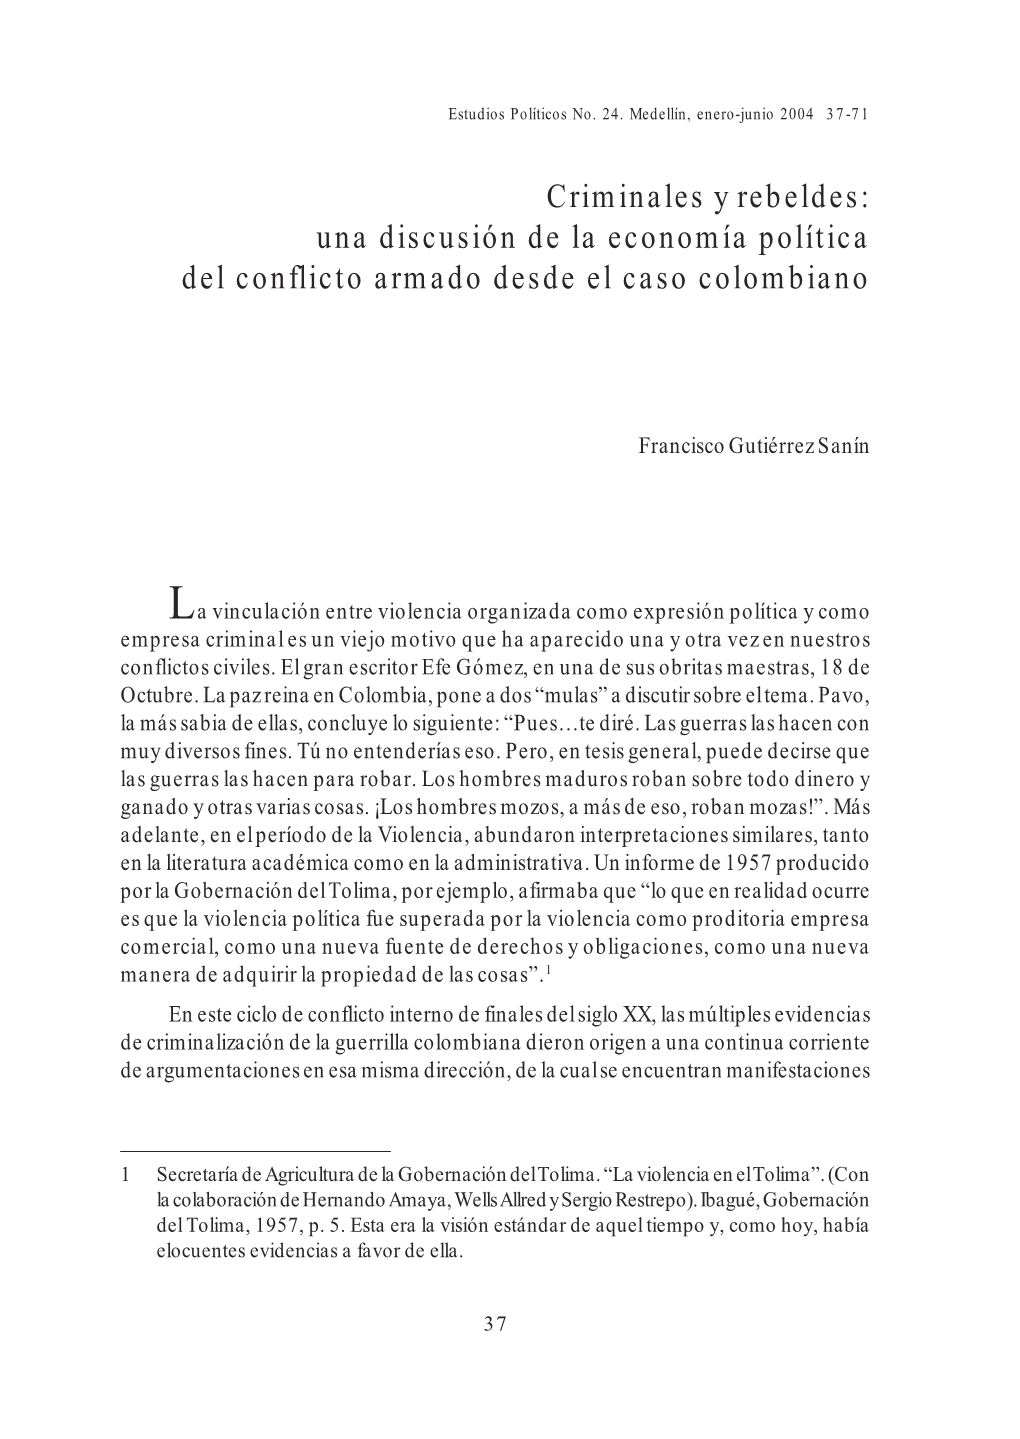 Criminales Y Rebeldes: Una Discusión De La Economía Política Del Conflicto Armado Desde El Caso Colombiano